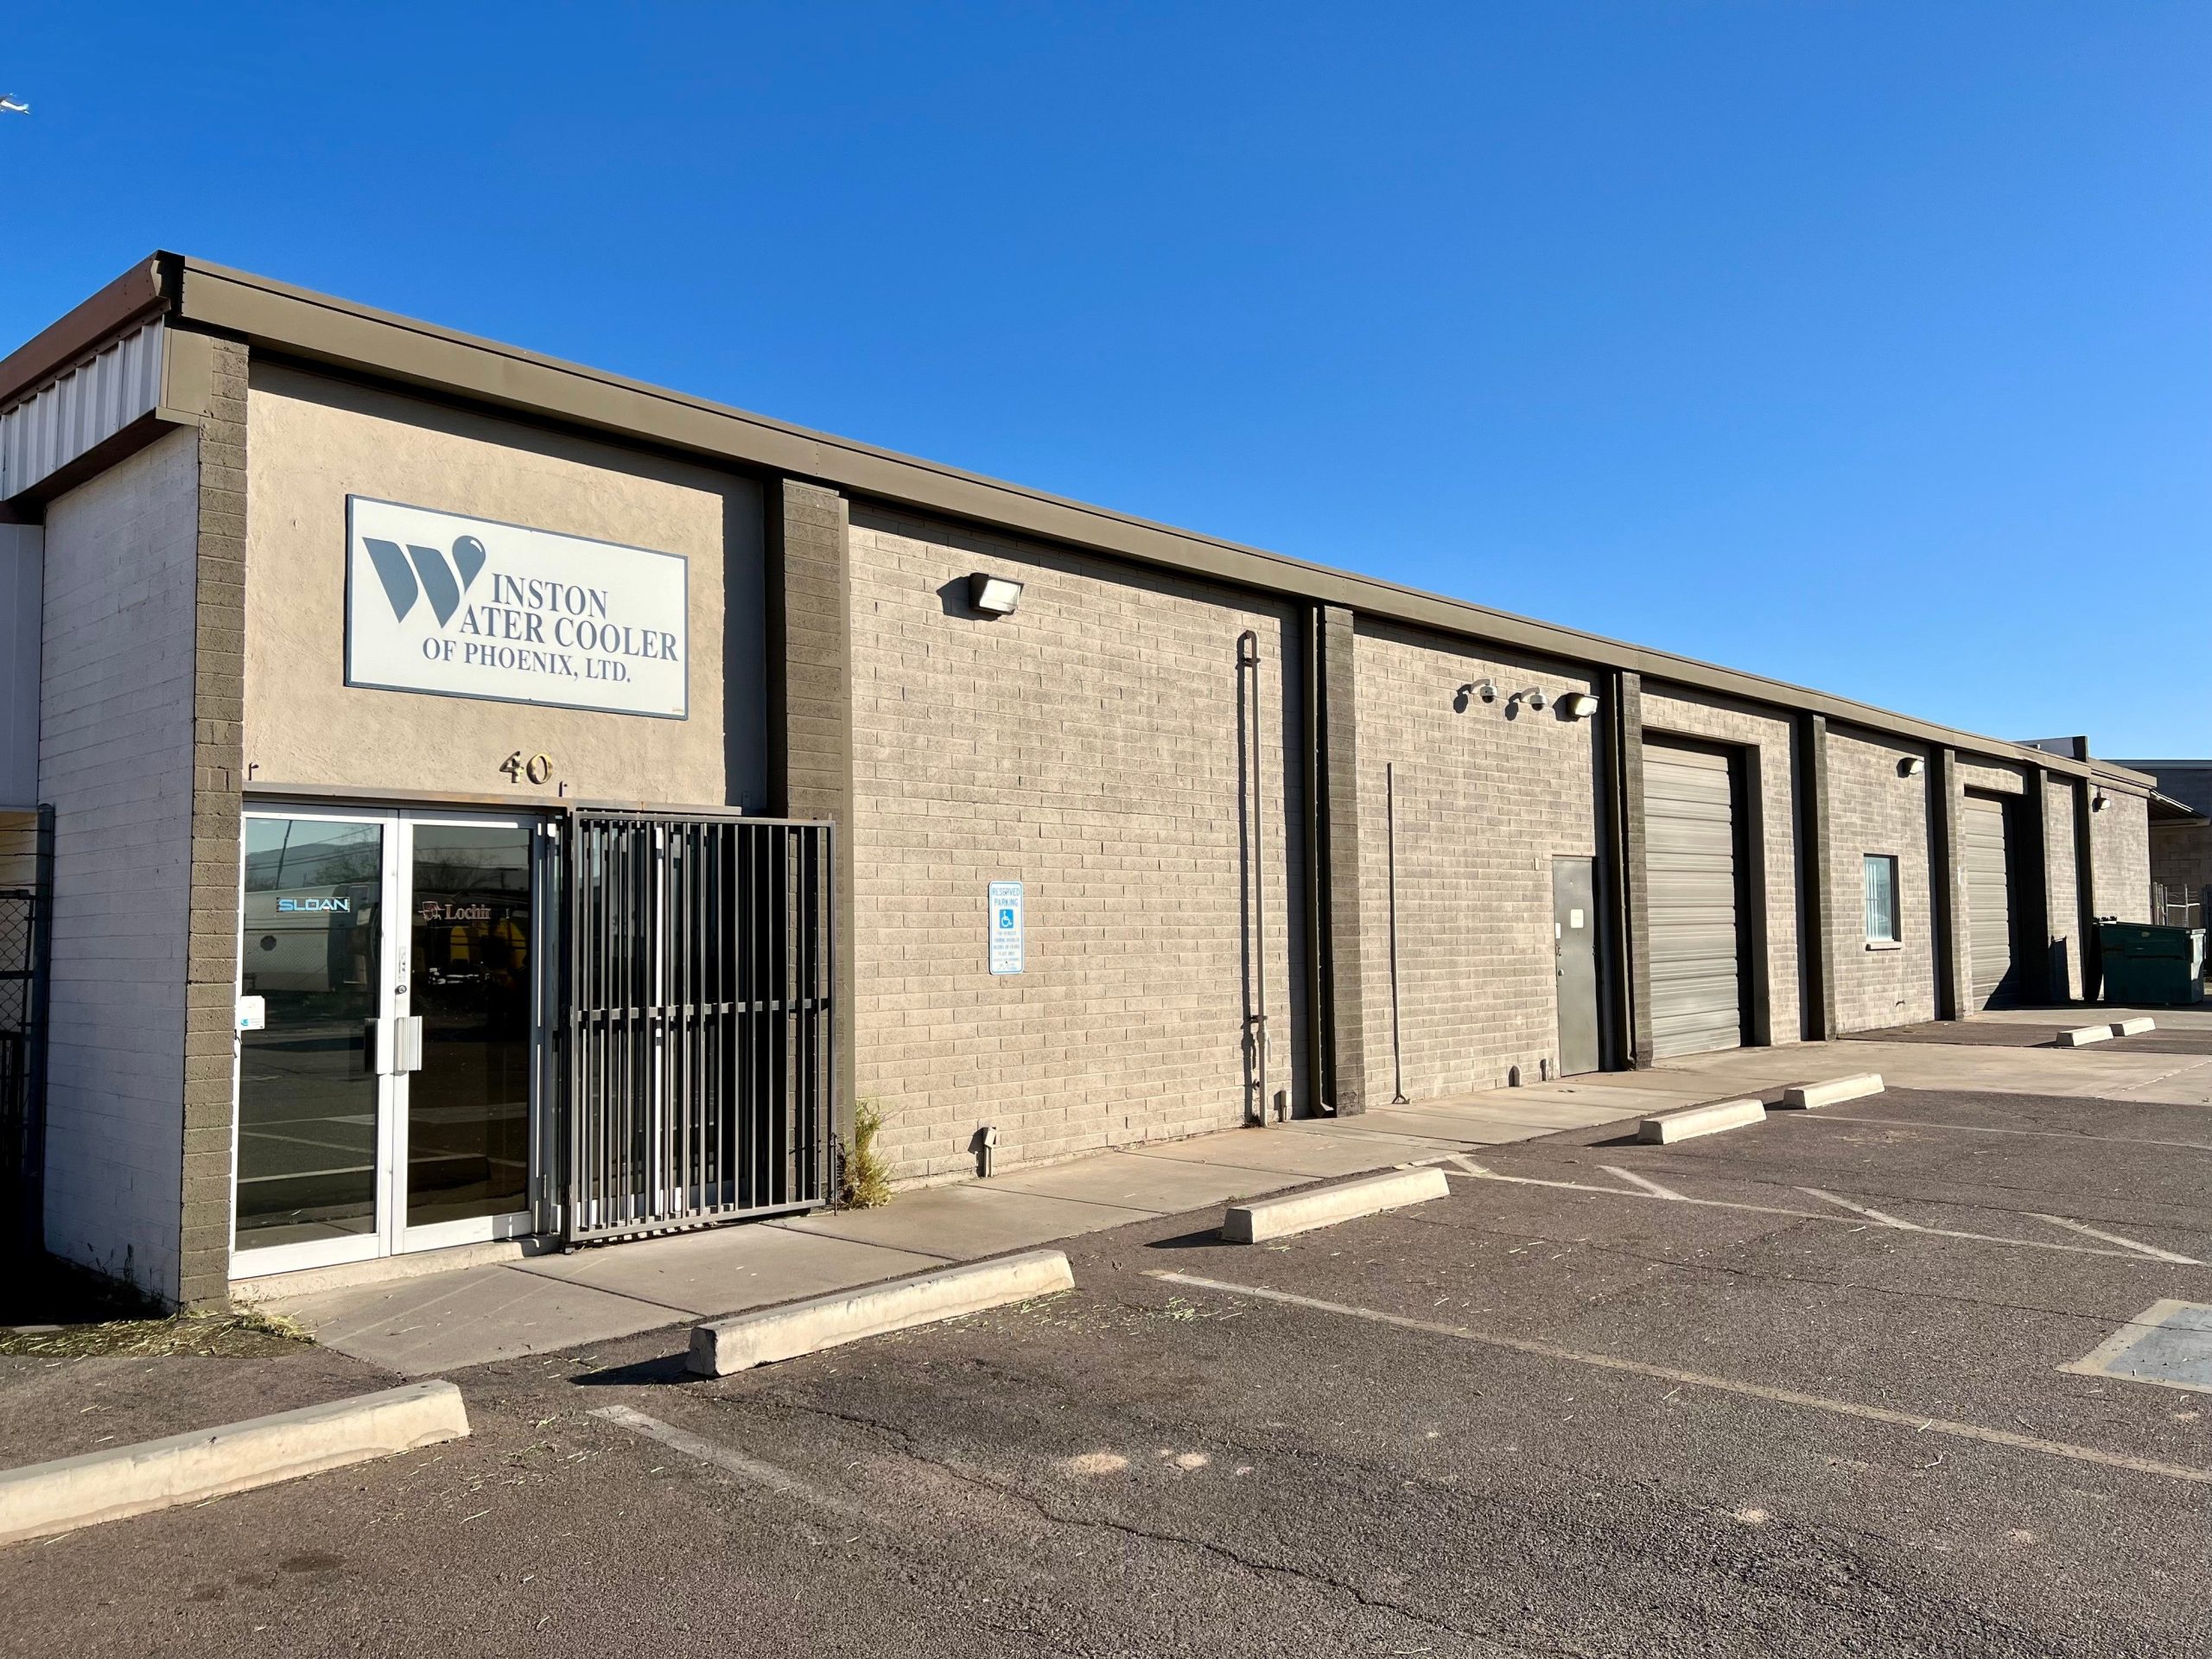 Winston Water Cooler Wholesale plumbing supply in Phoenix